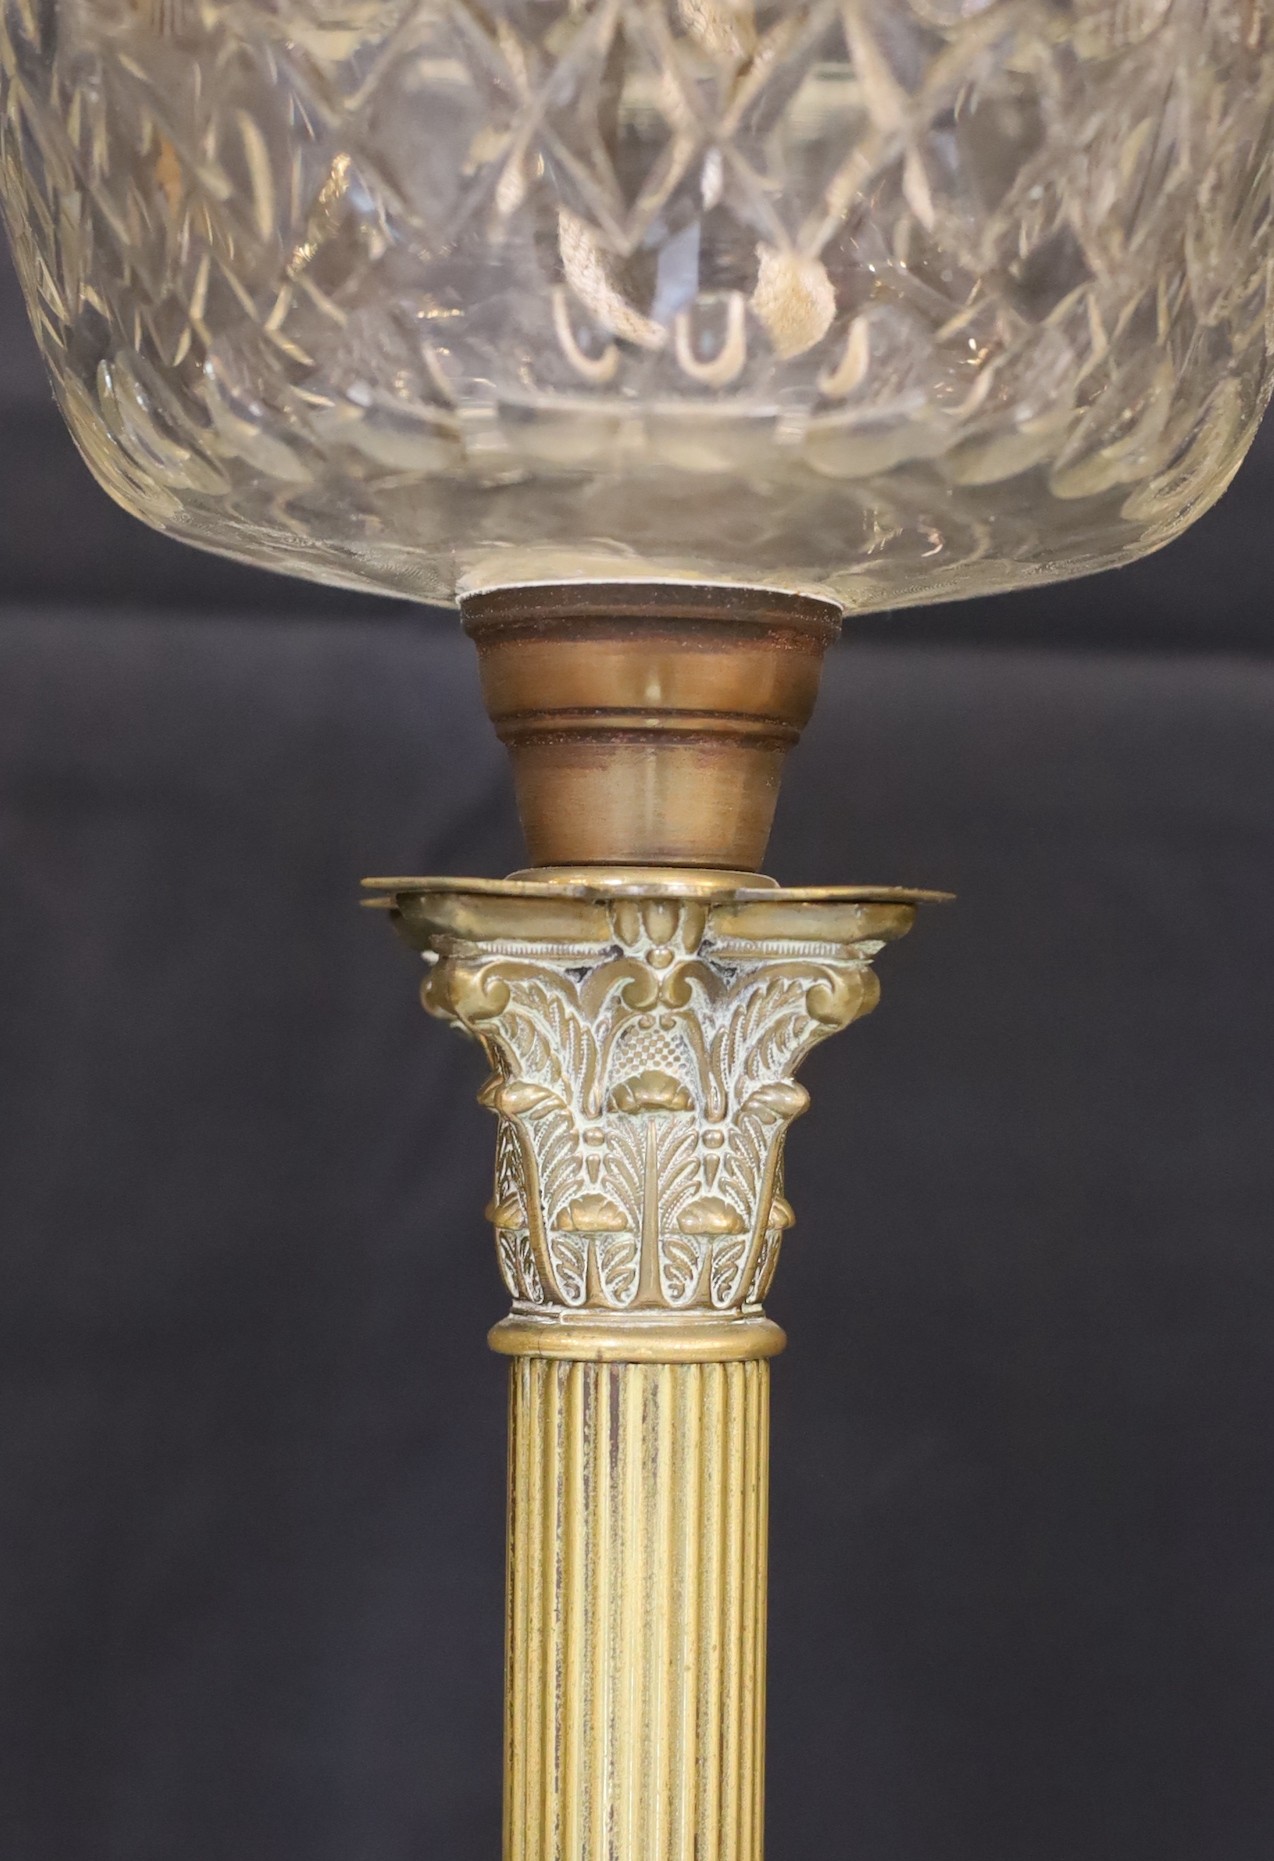 An Edwardian brass Corinthian column oil lamp with cut glass reservoir, improved duplex mechanism, - Image 4 of 5